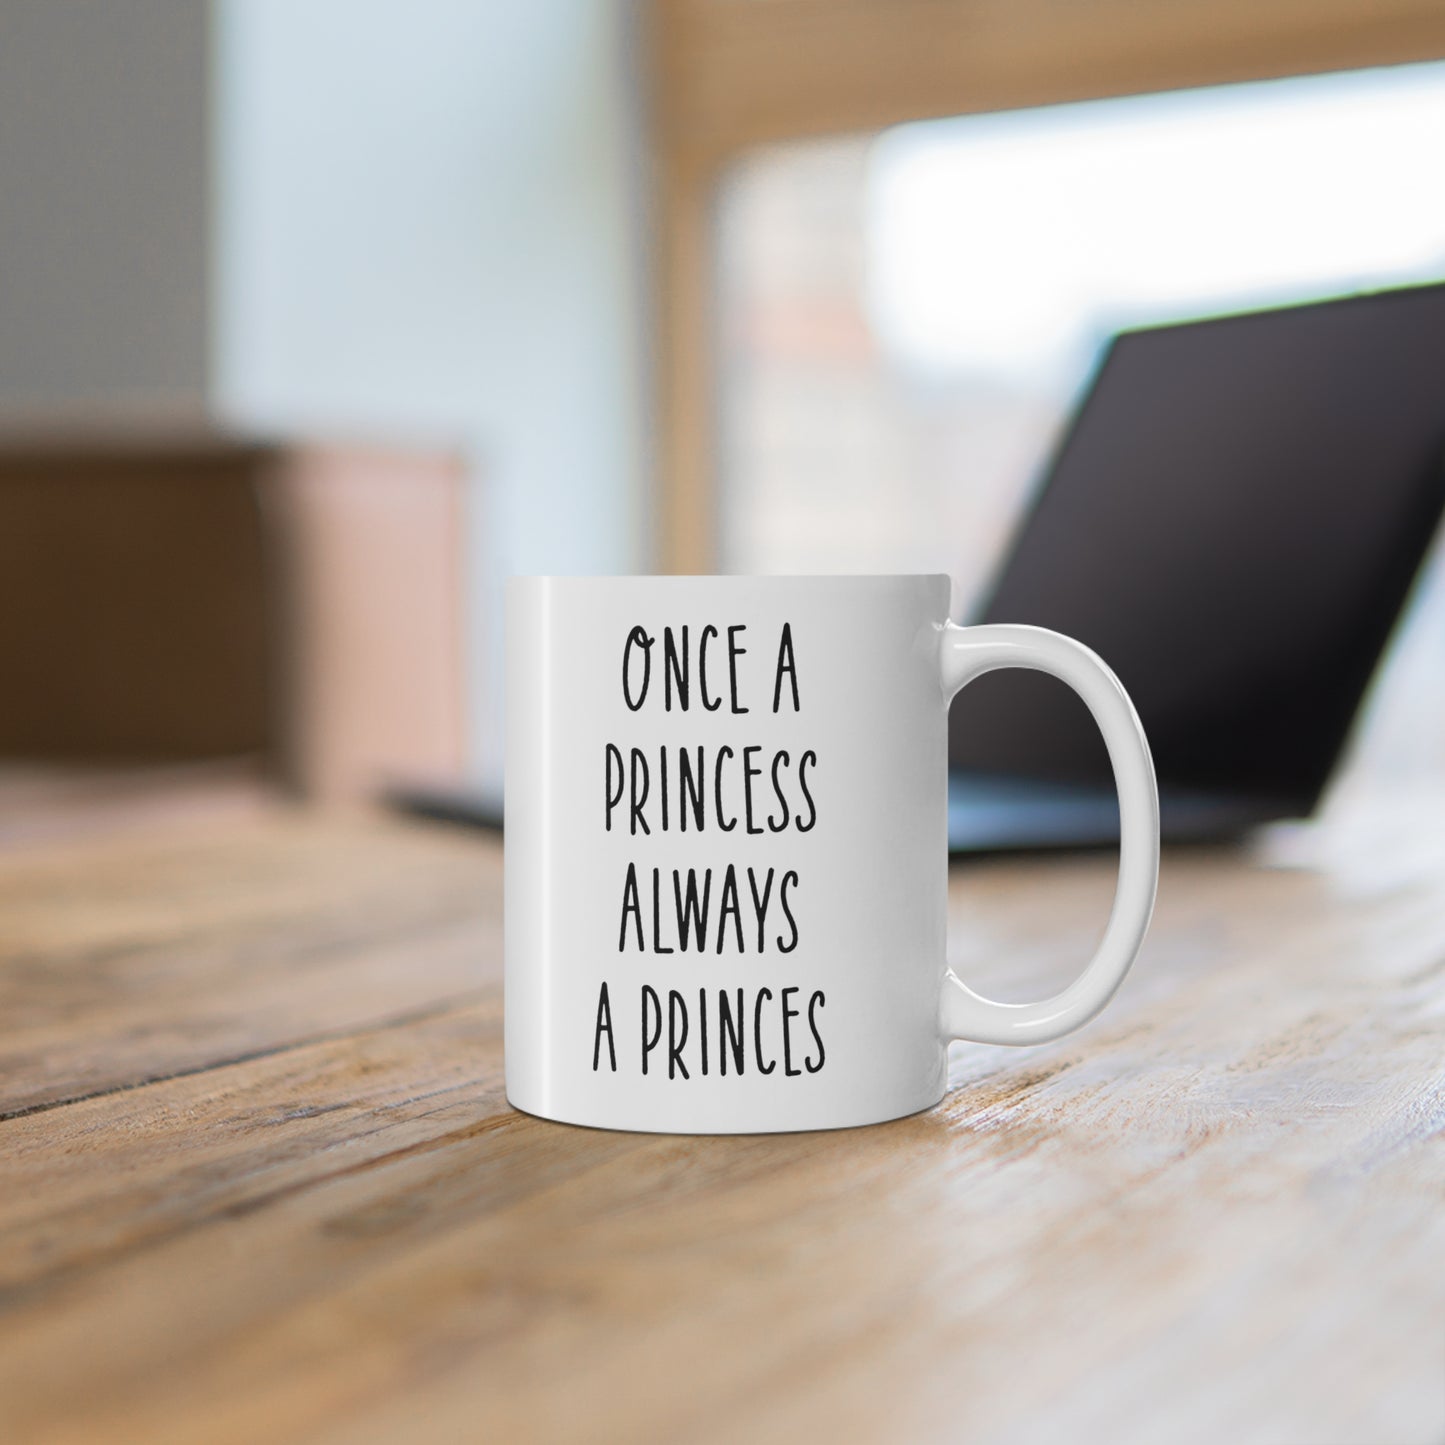 11oz ceramic mug with quote Once a Princess Always a Princess